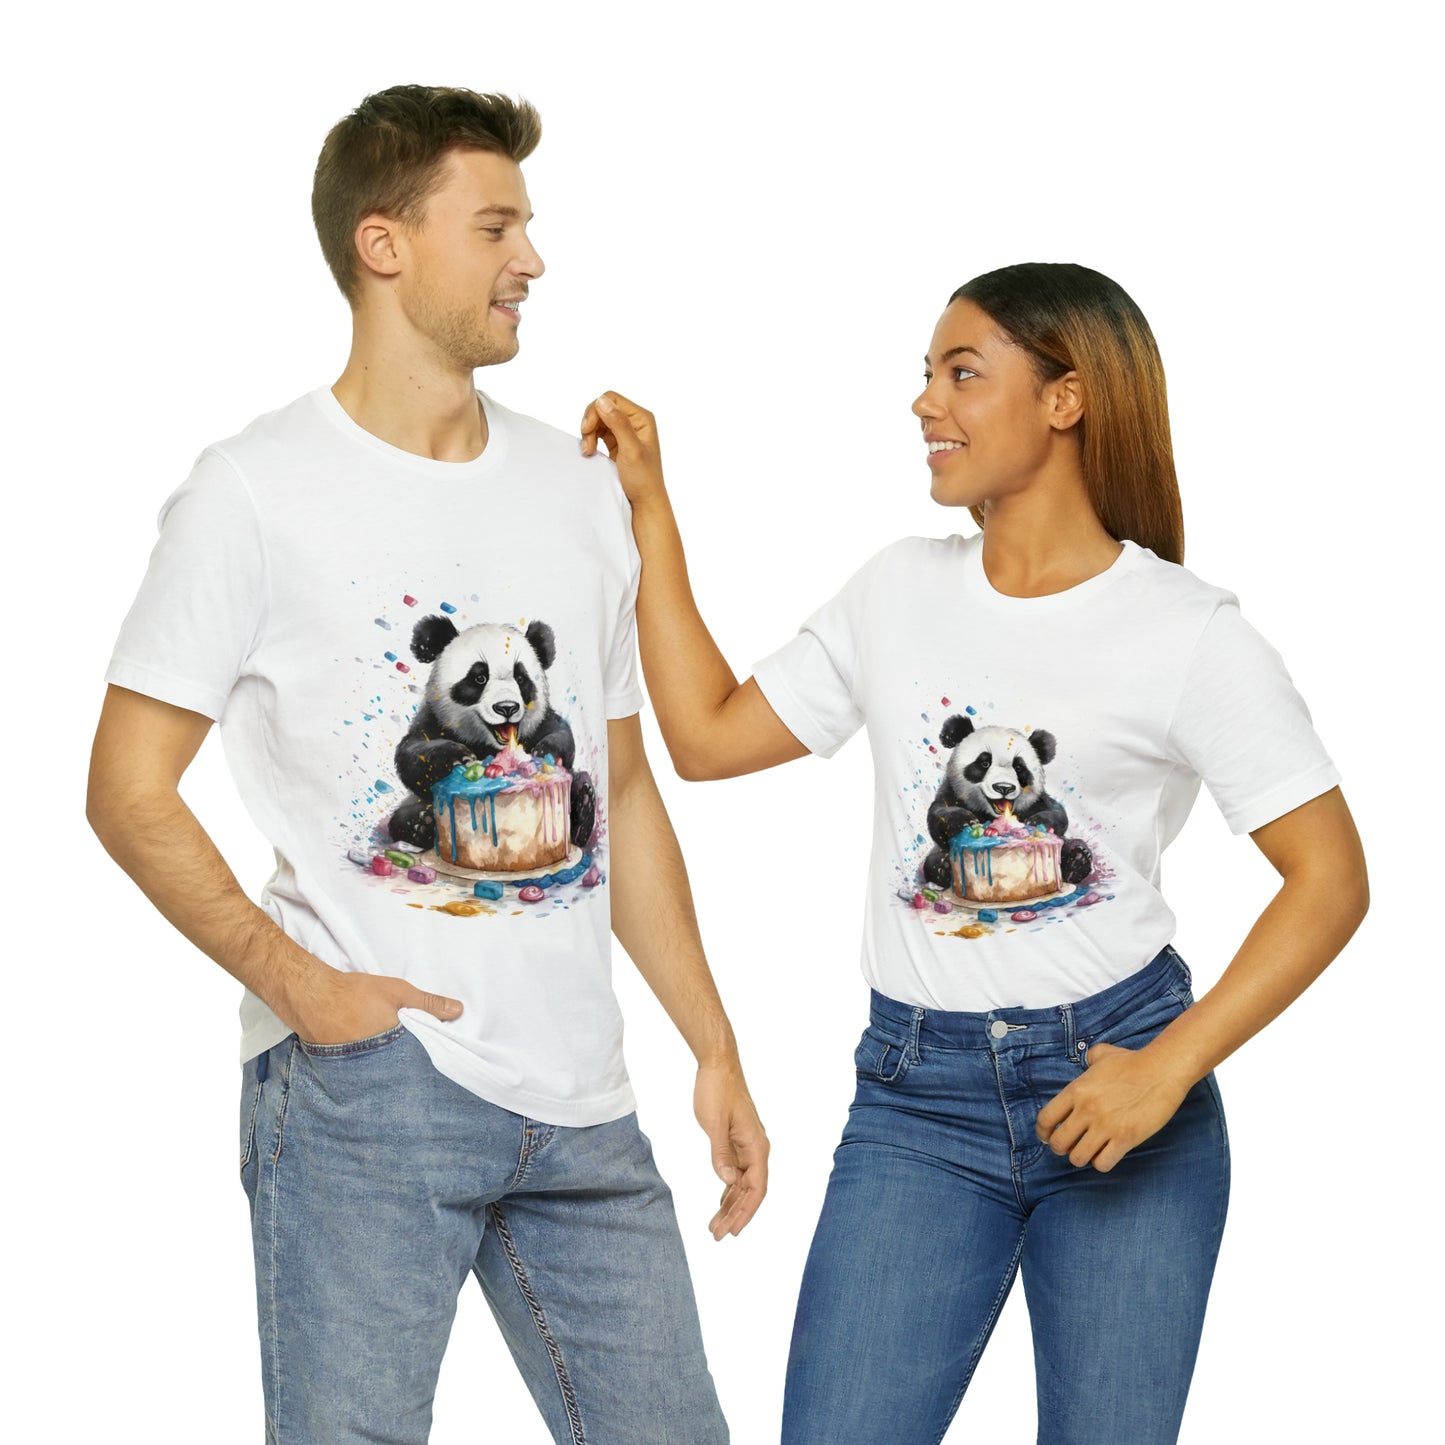 "Surprise Party Panda" T-Shirt